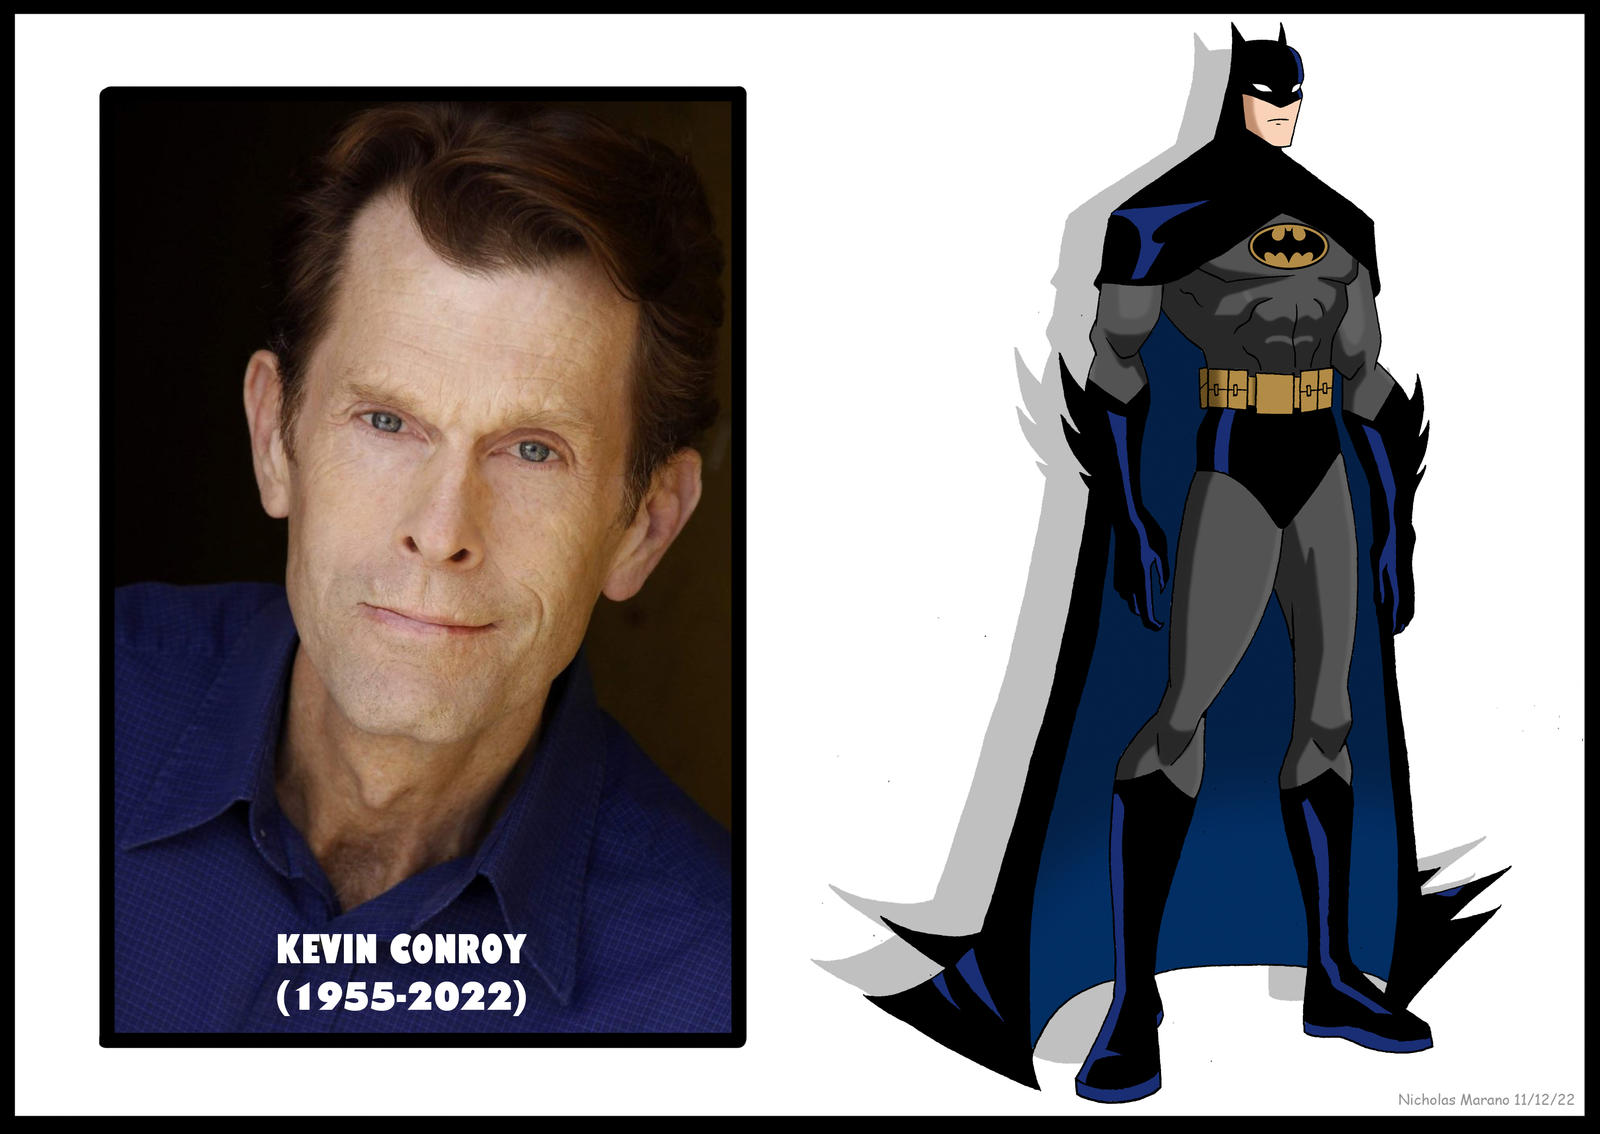 Farewell Kevin Conroy: The True Dark Knight! by nicholasnrm123 on DeviantArt